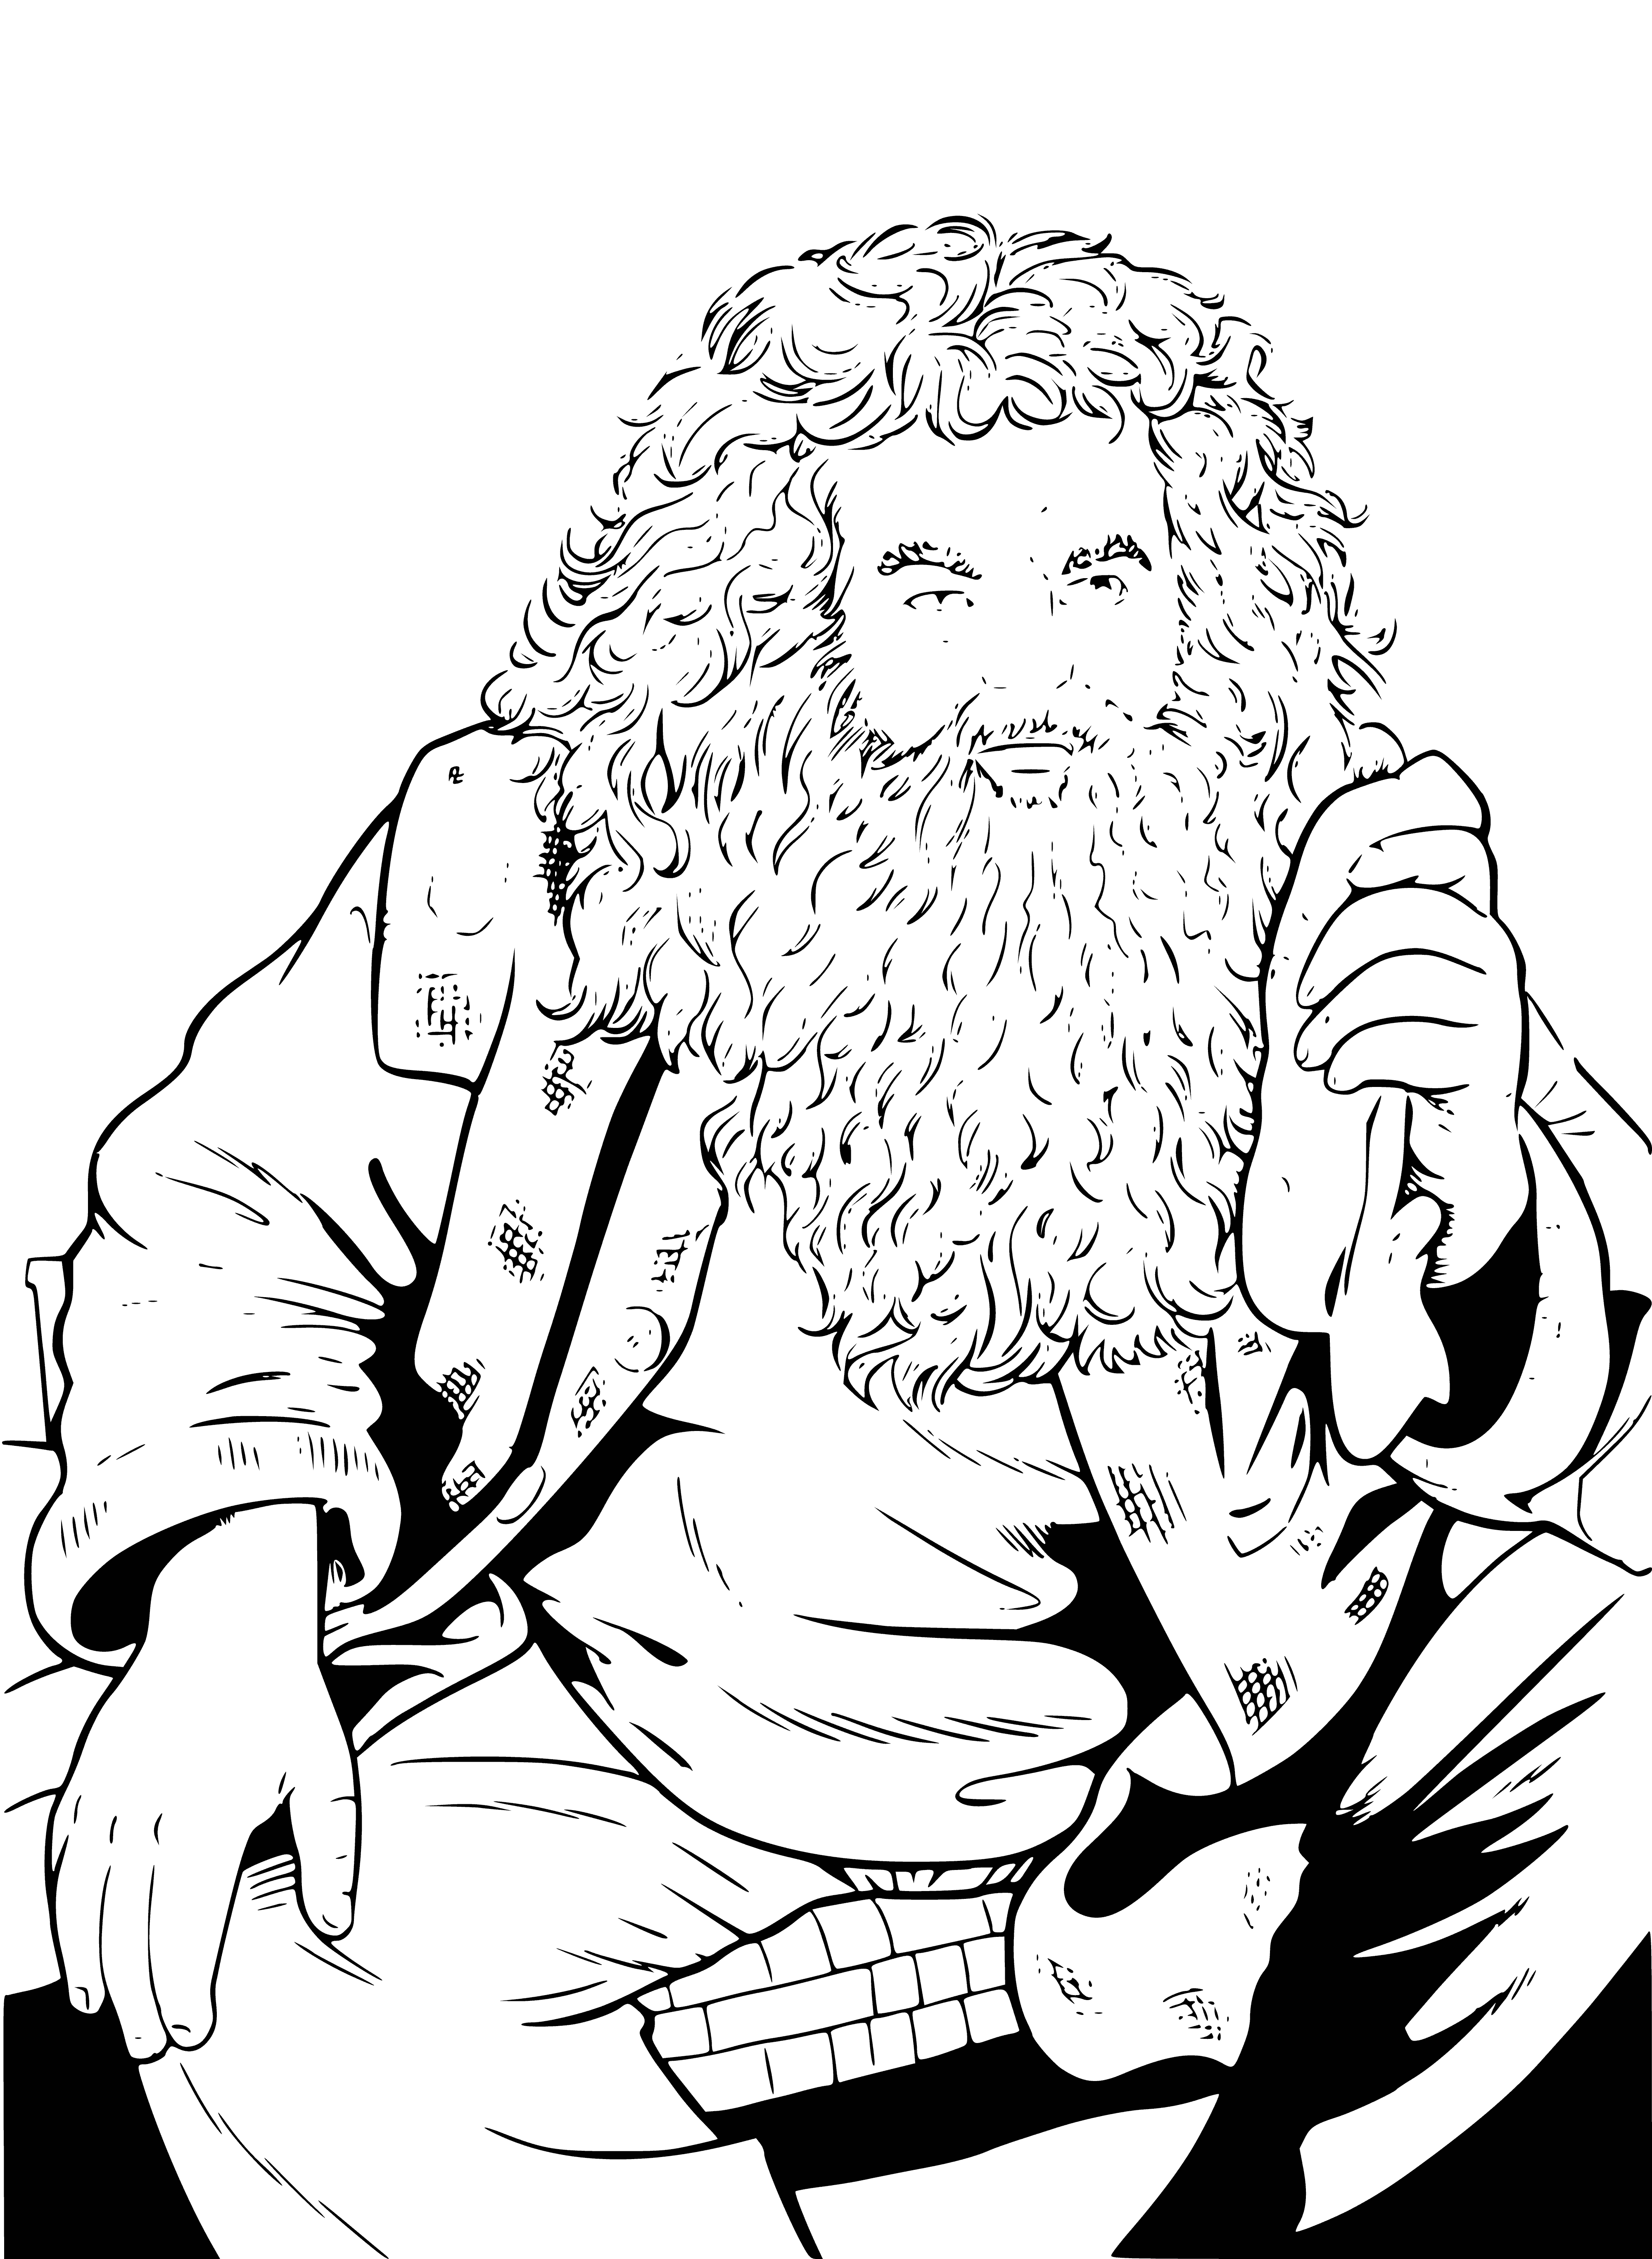 Rubeus Hagrid coloring page